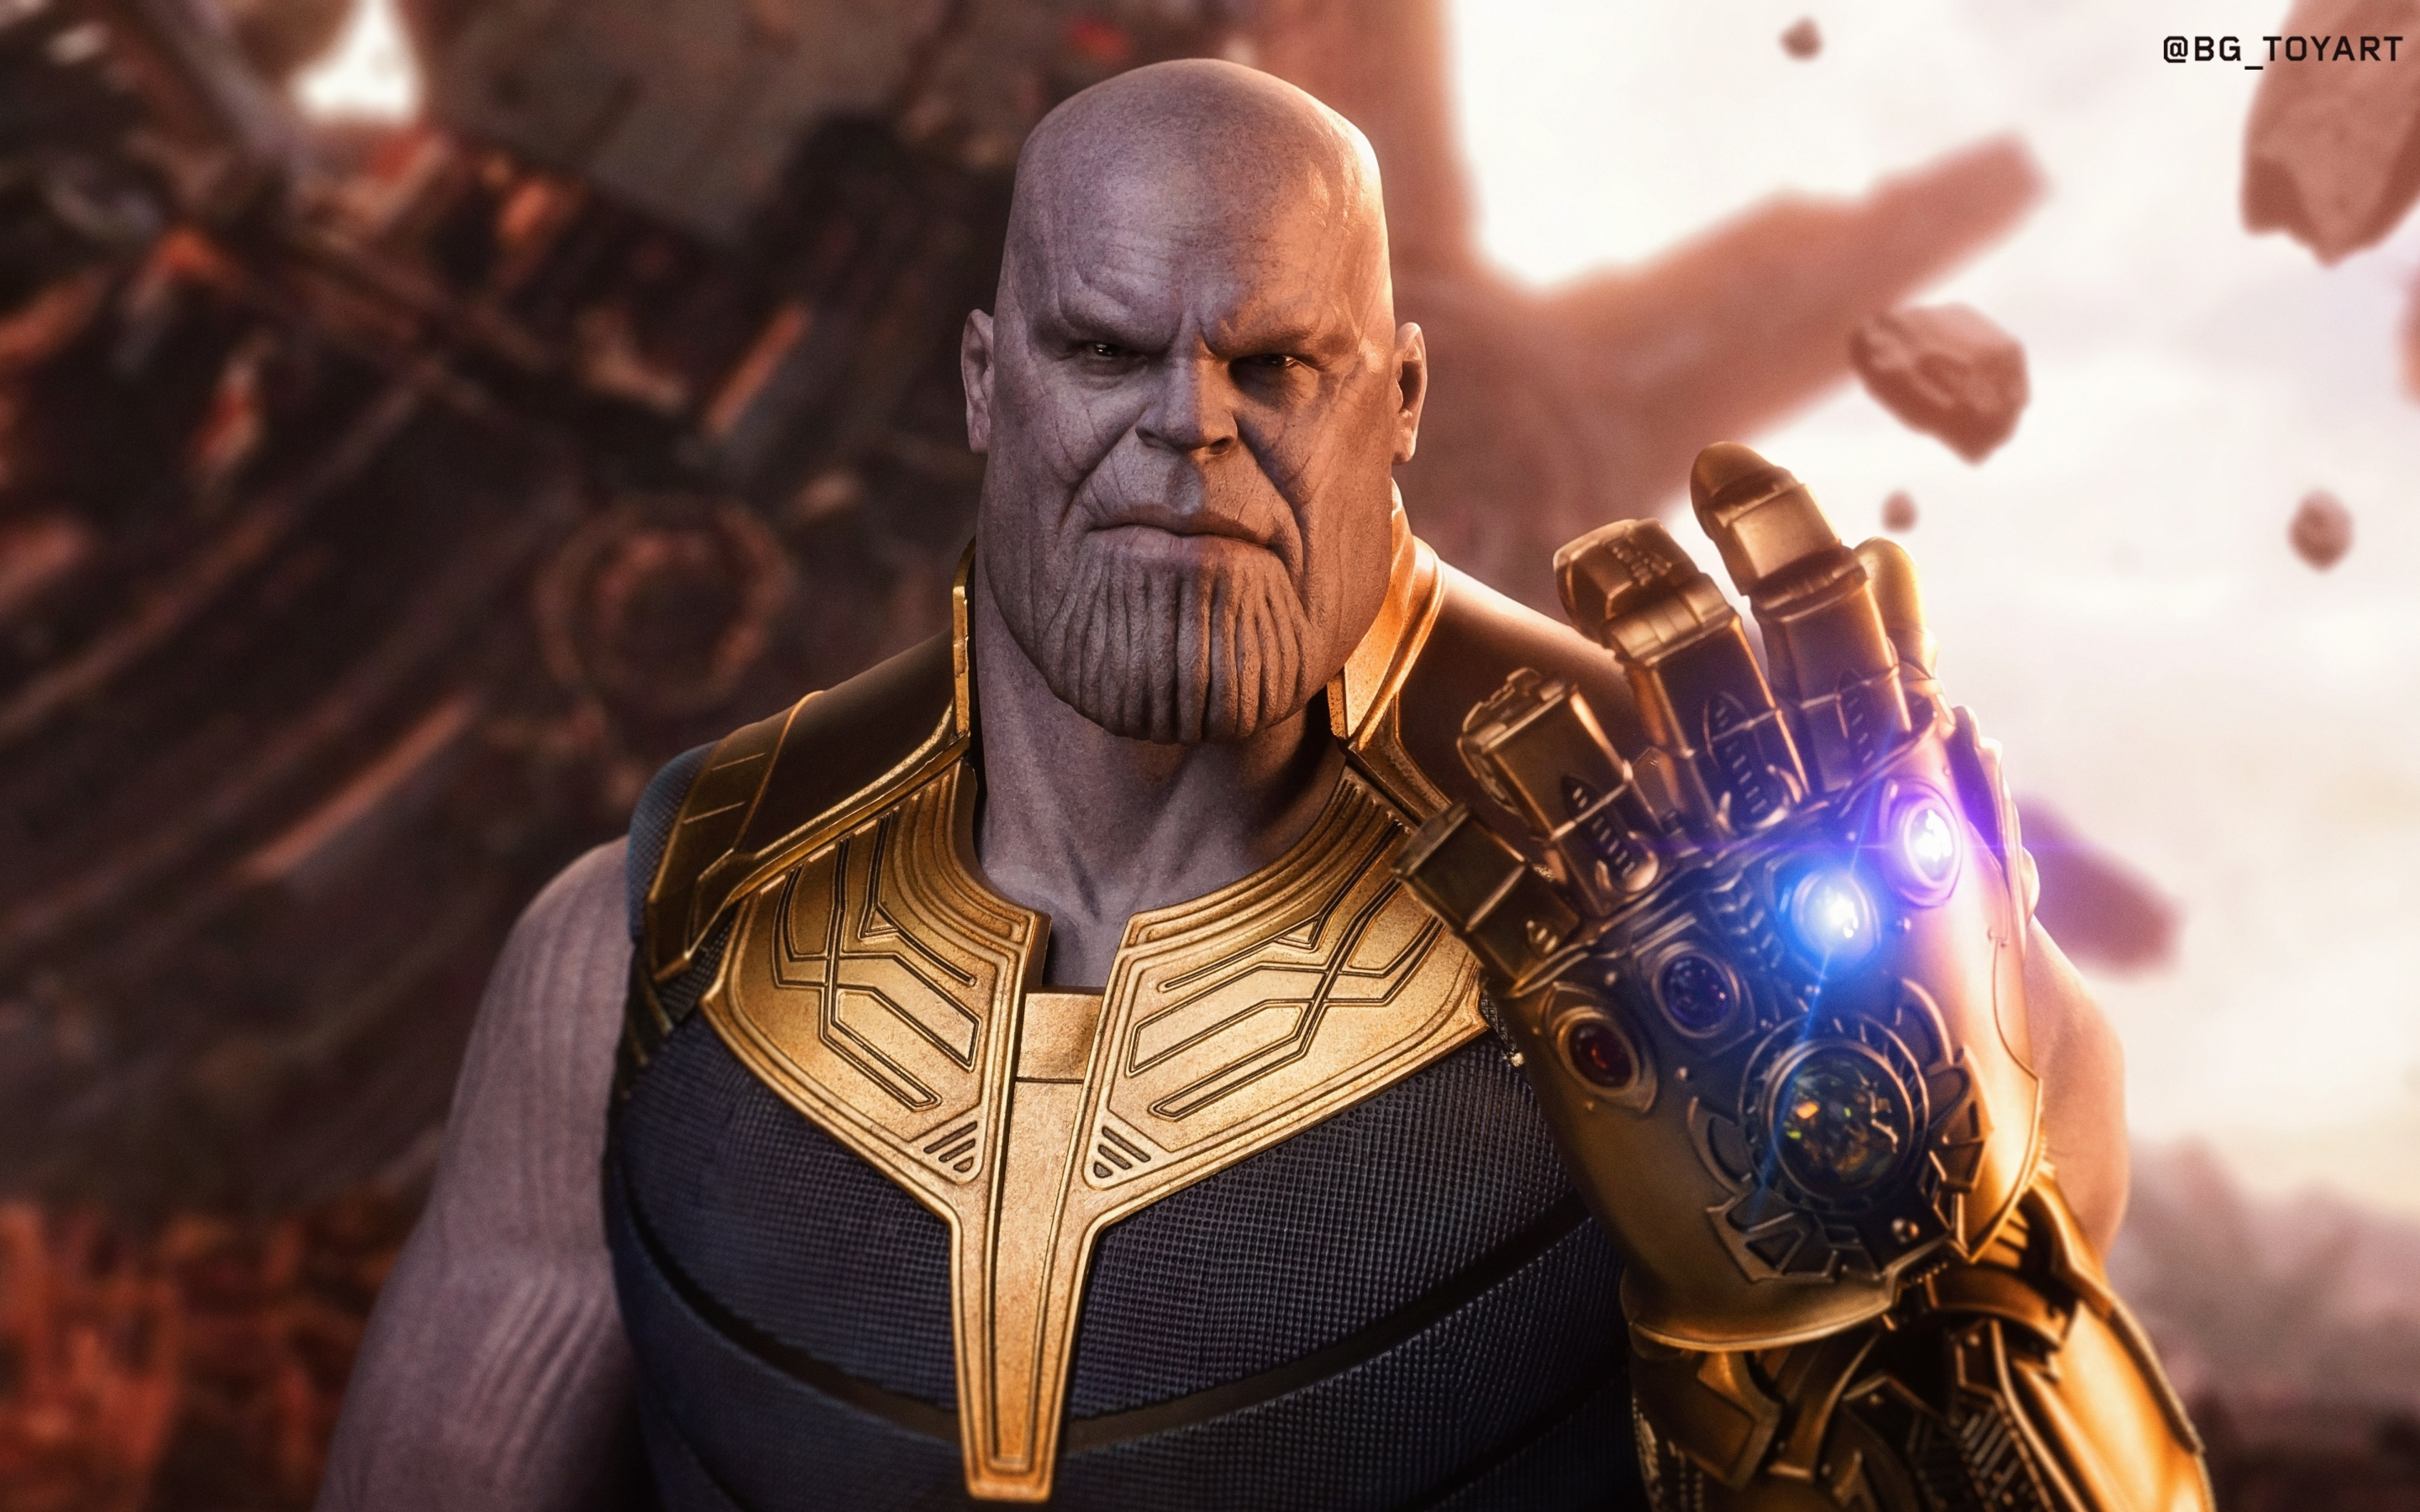 Thanos, Avengers: infinity war, toy art, 2880x1800 wallpaper